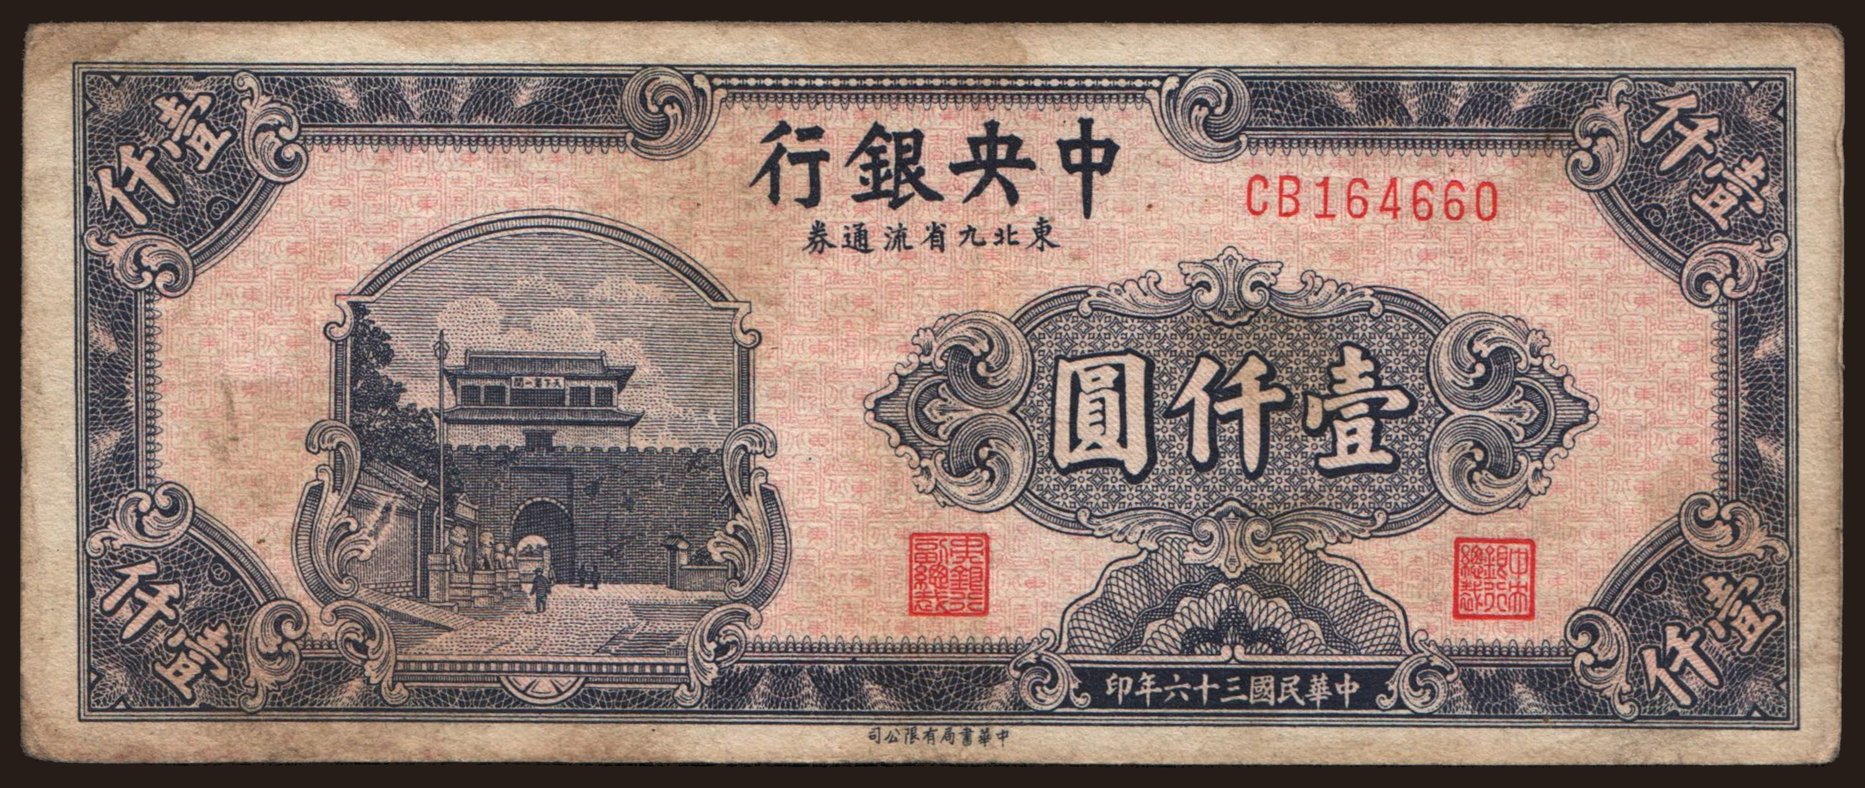 Central Bank of China, 1000 yuan, 1947